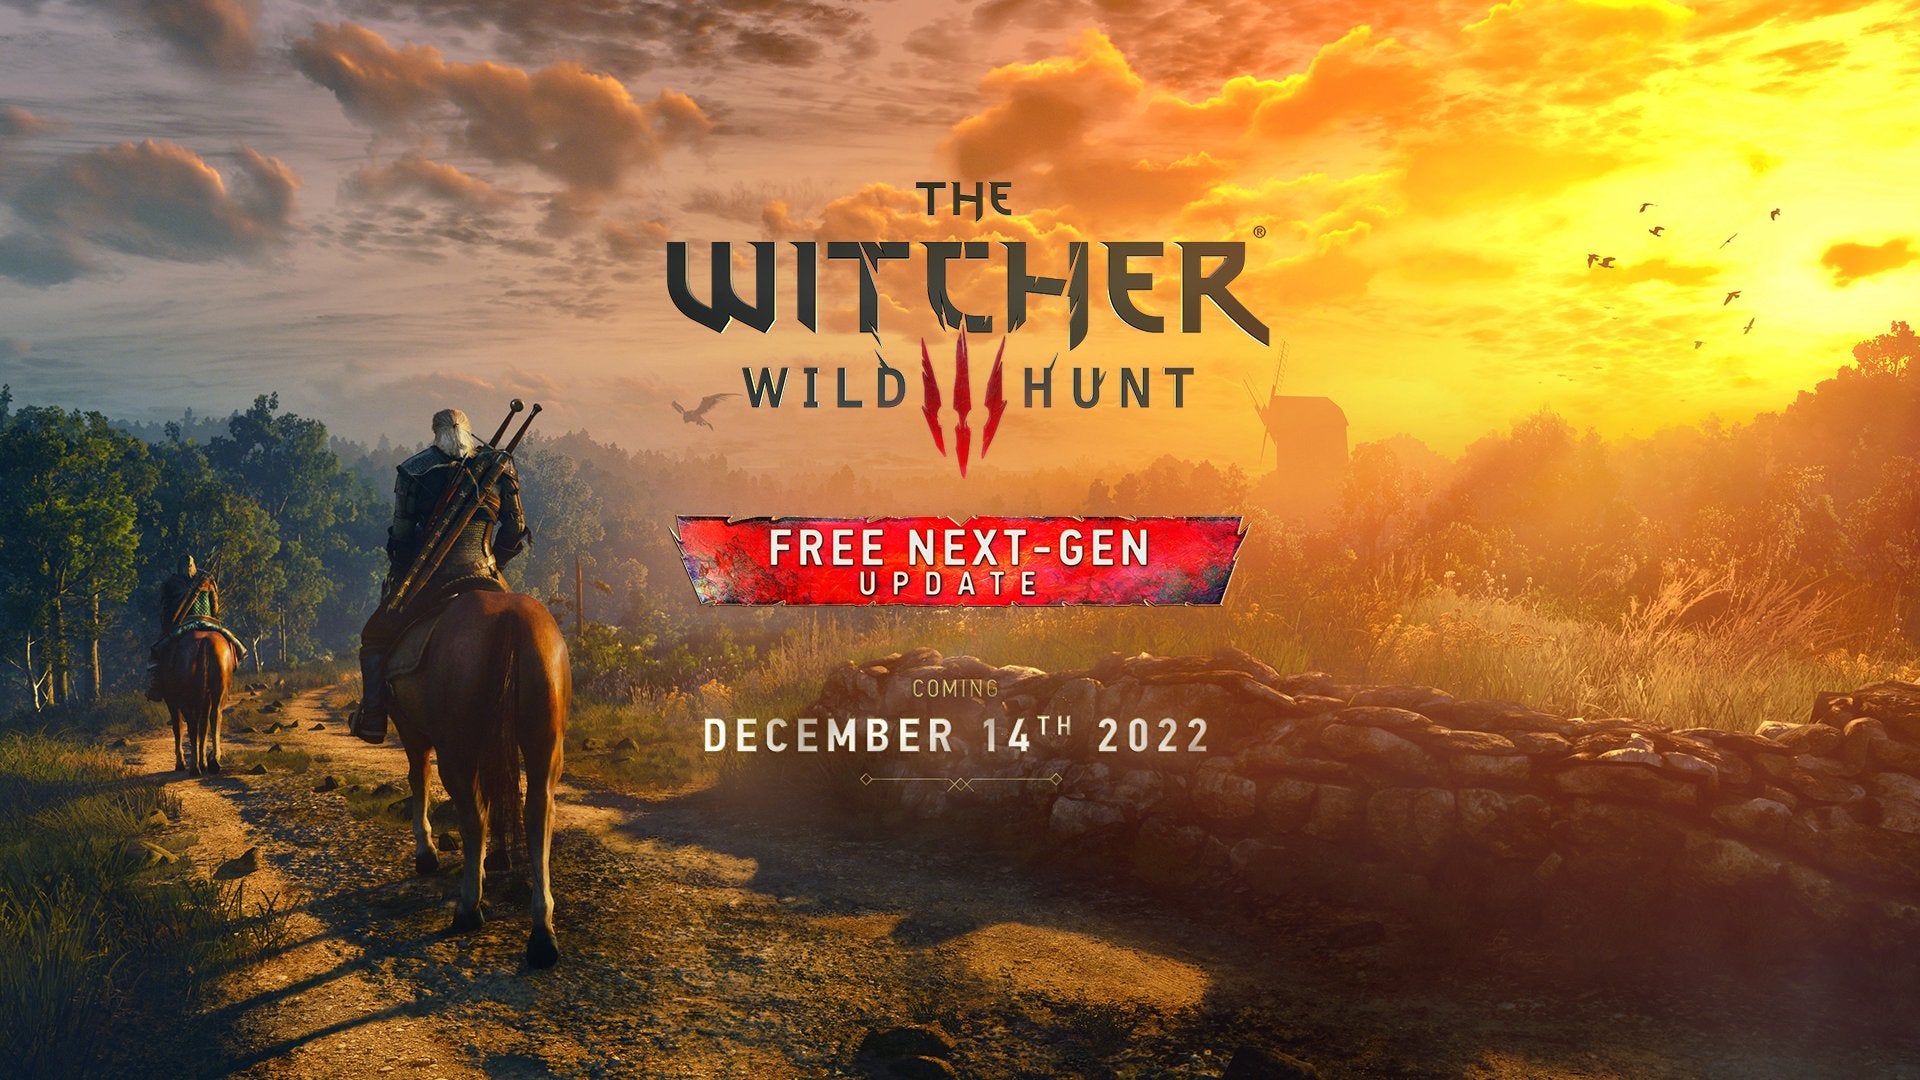 Imagen para La actualización nextgen de The Witcher 3 se publicará el día 14 de diciembre